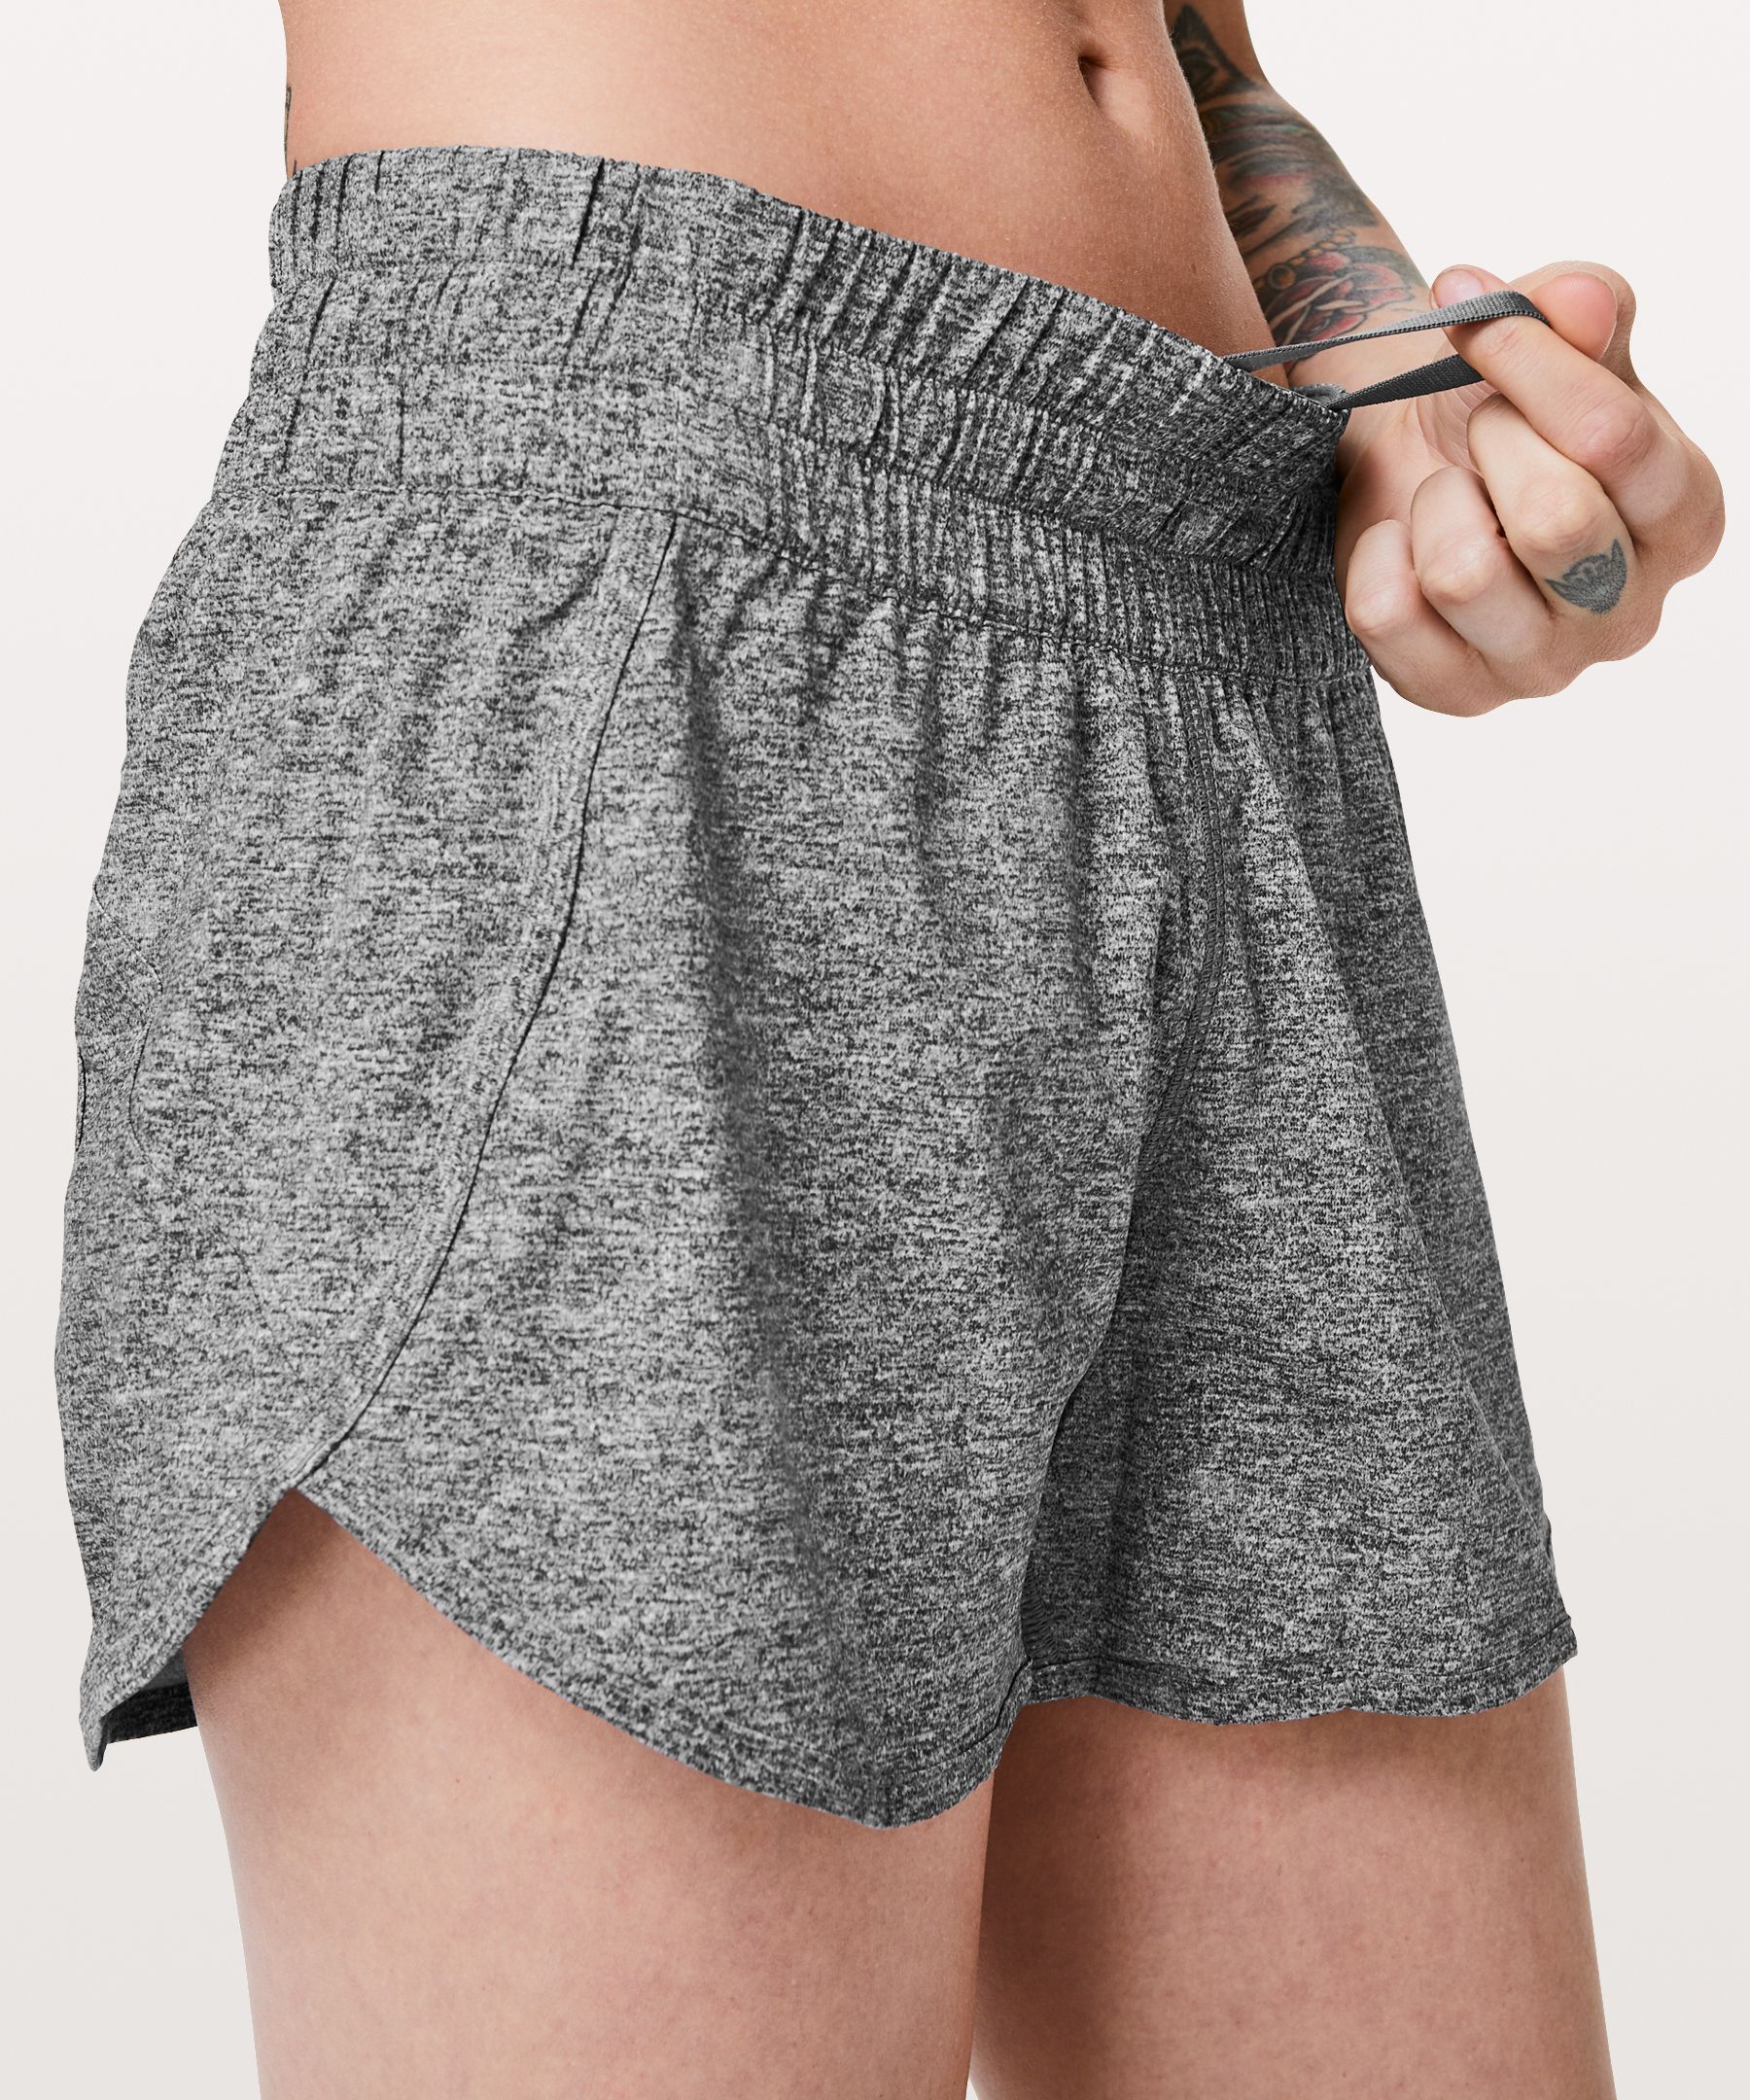 lululemon tracker shorts size 8